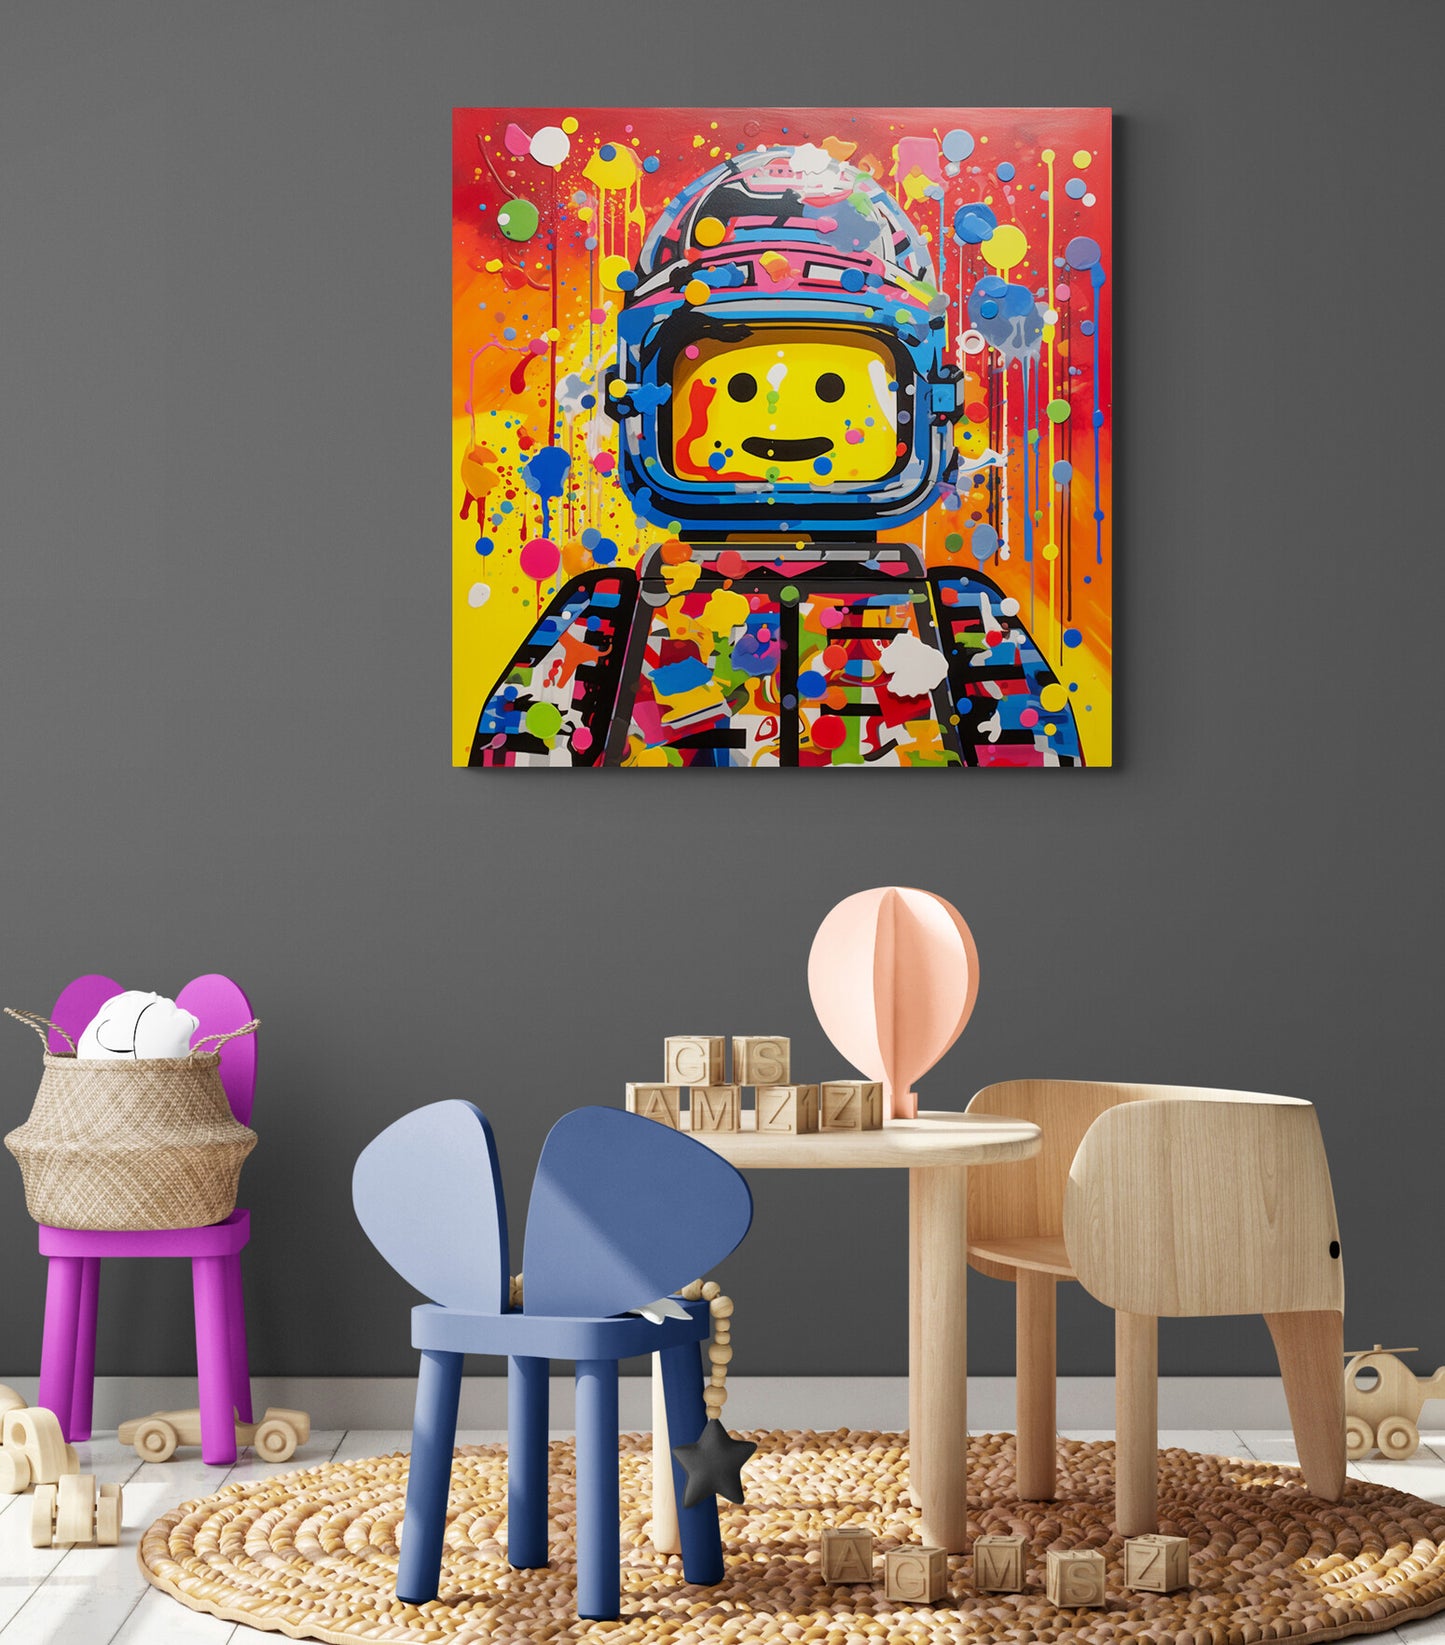 Tableau Legos dans salle de jeux pour enfant, complétant l'ambiance ludique et créative de l'espace